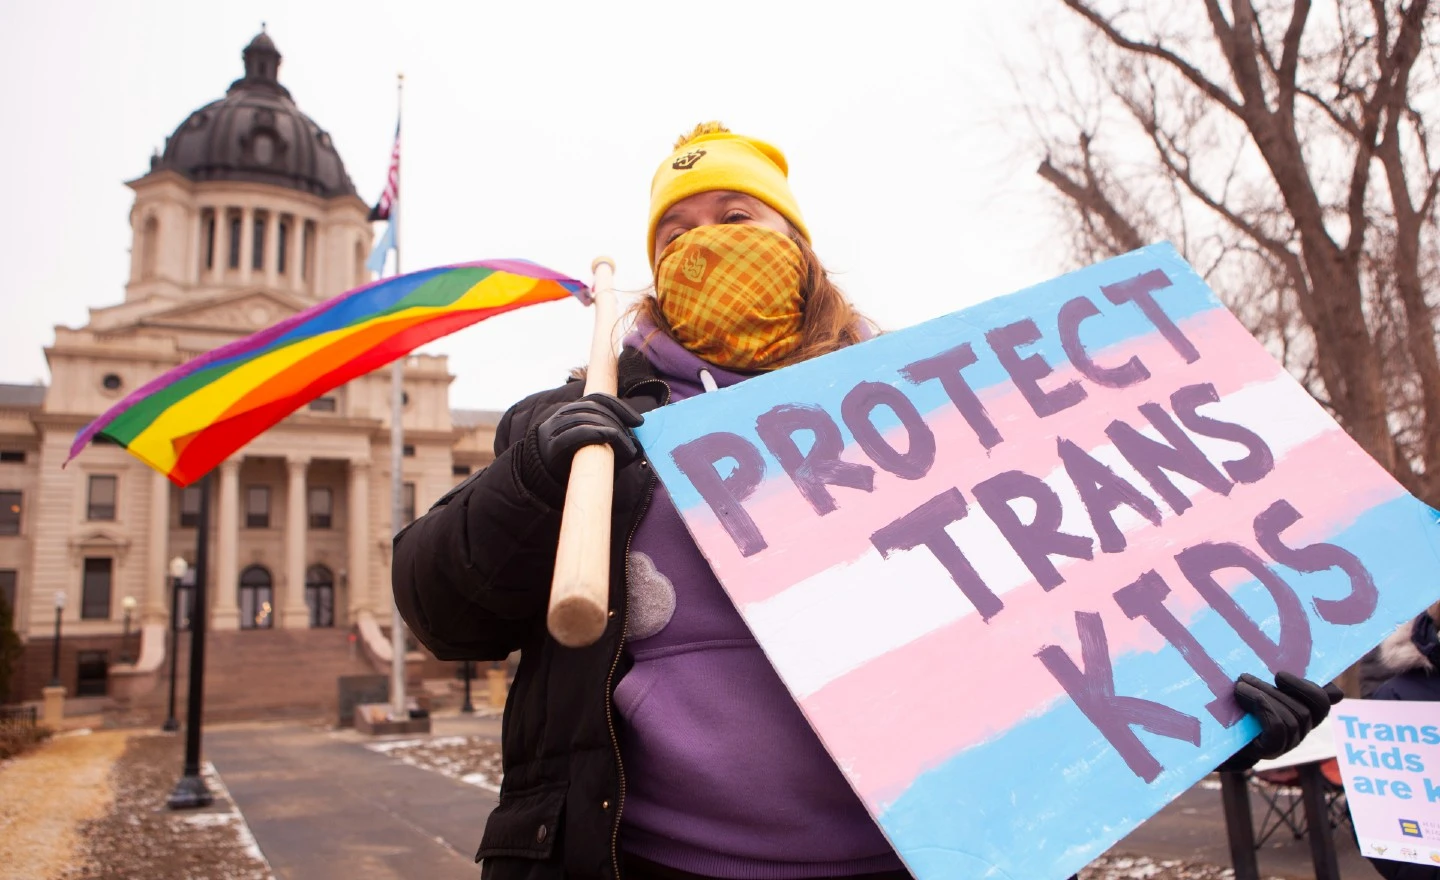 Τρανς & μη Δυαδικοί Νέοι ΗΠΑ: Οι μισοί “σκέφτηκαν σοβαρά” να αυτοκτονήσουν τον τελευταίο χρόνο